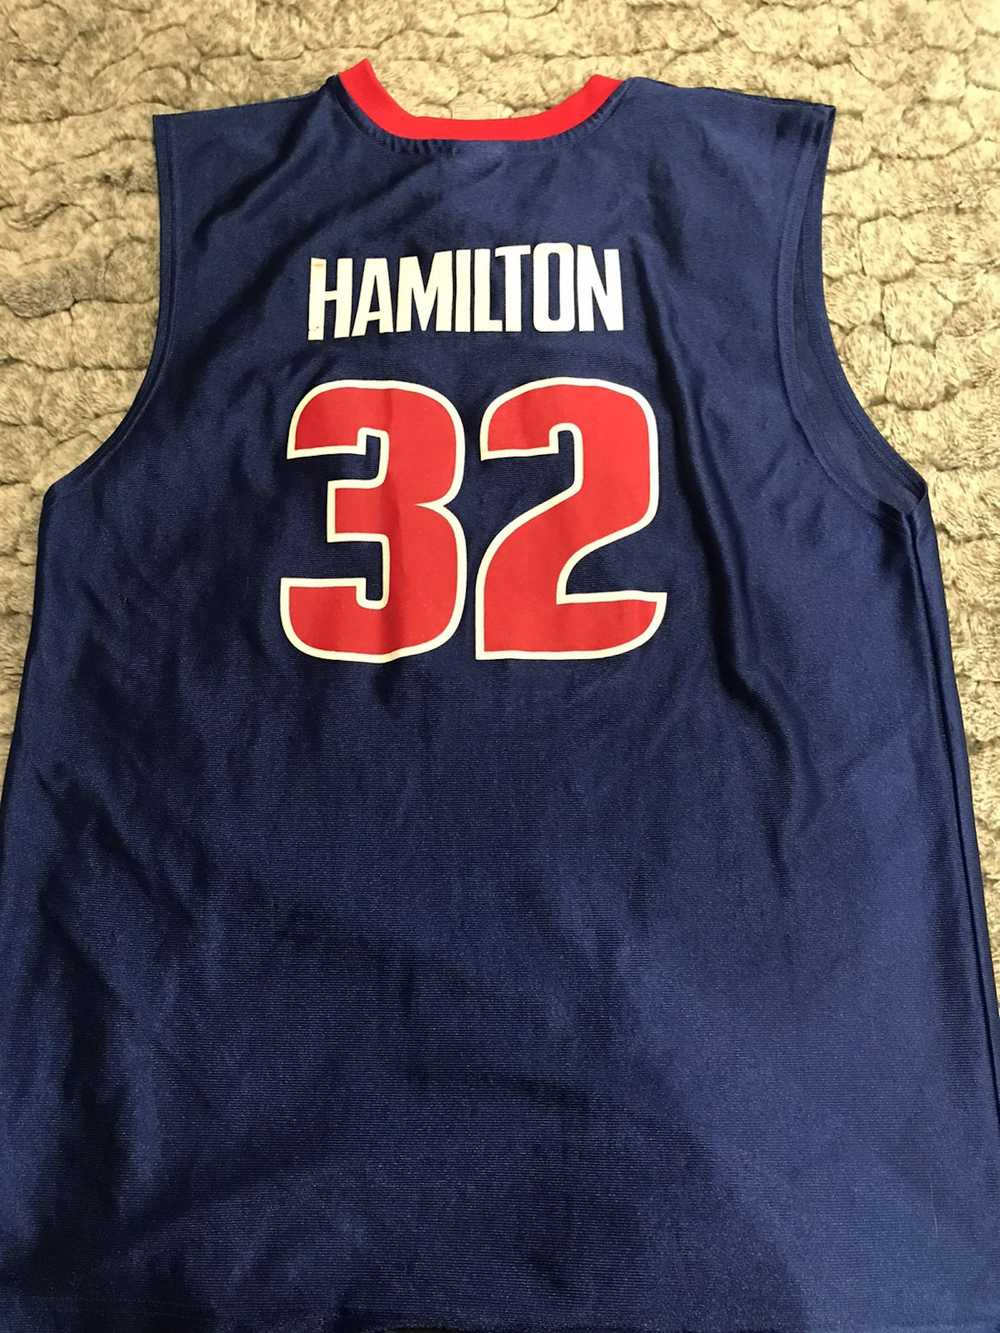 NBA Vintage Richard Hamilton Pistons Jersey - image 2